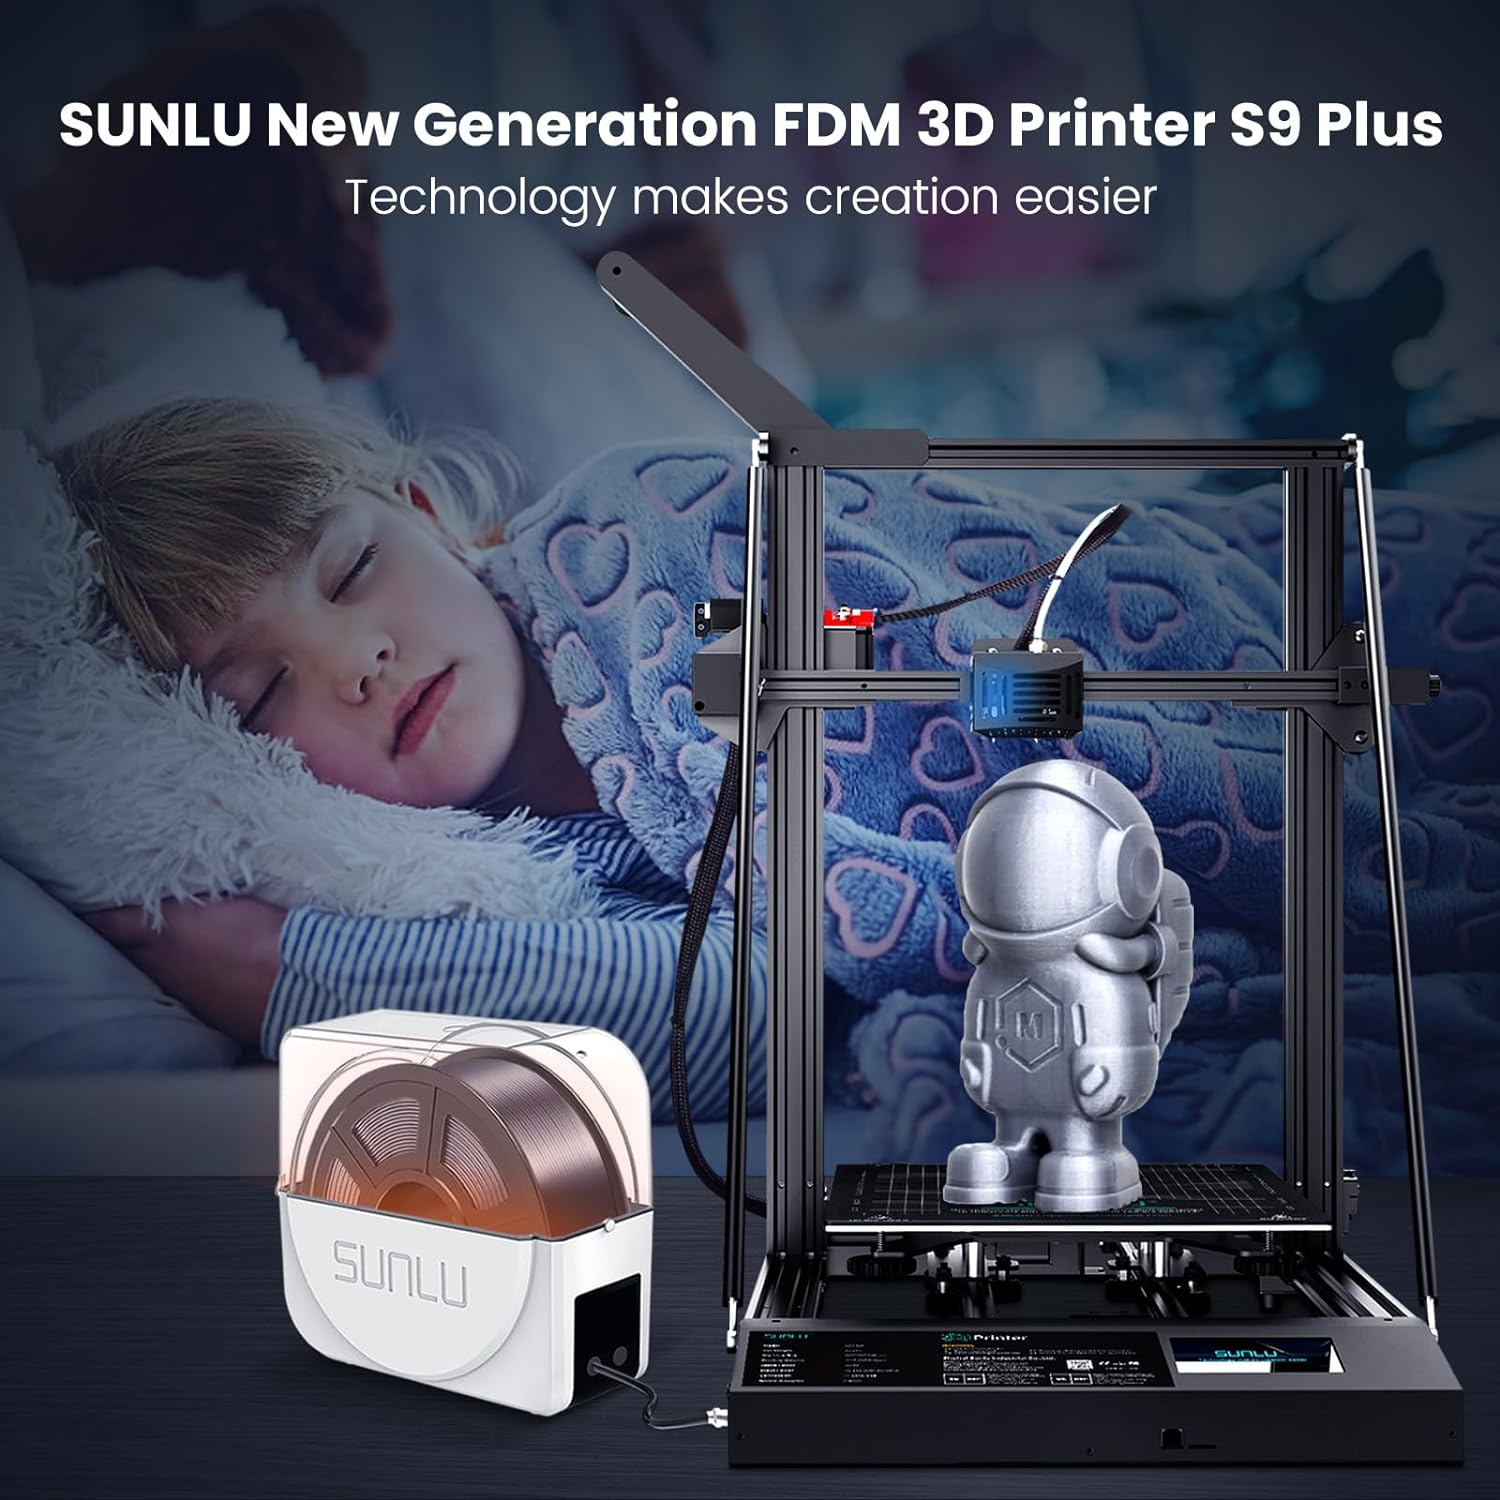 sunlu-s9-plus-large-3d-printer-fdm-3d-printer-with-filament-dryer-integration-clog-detection-auto-leveling-silent-mother-1 SUNLU S9 Plus 3D Printer Review